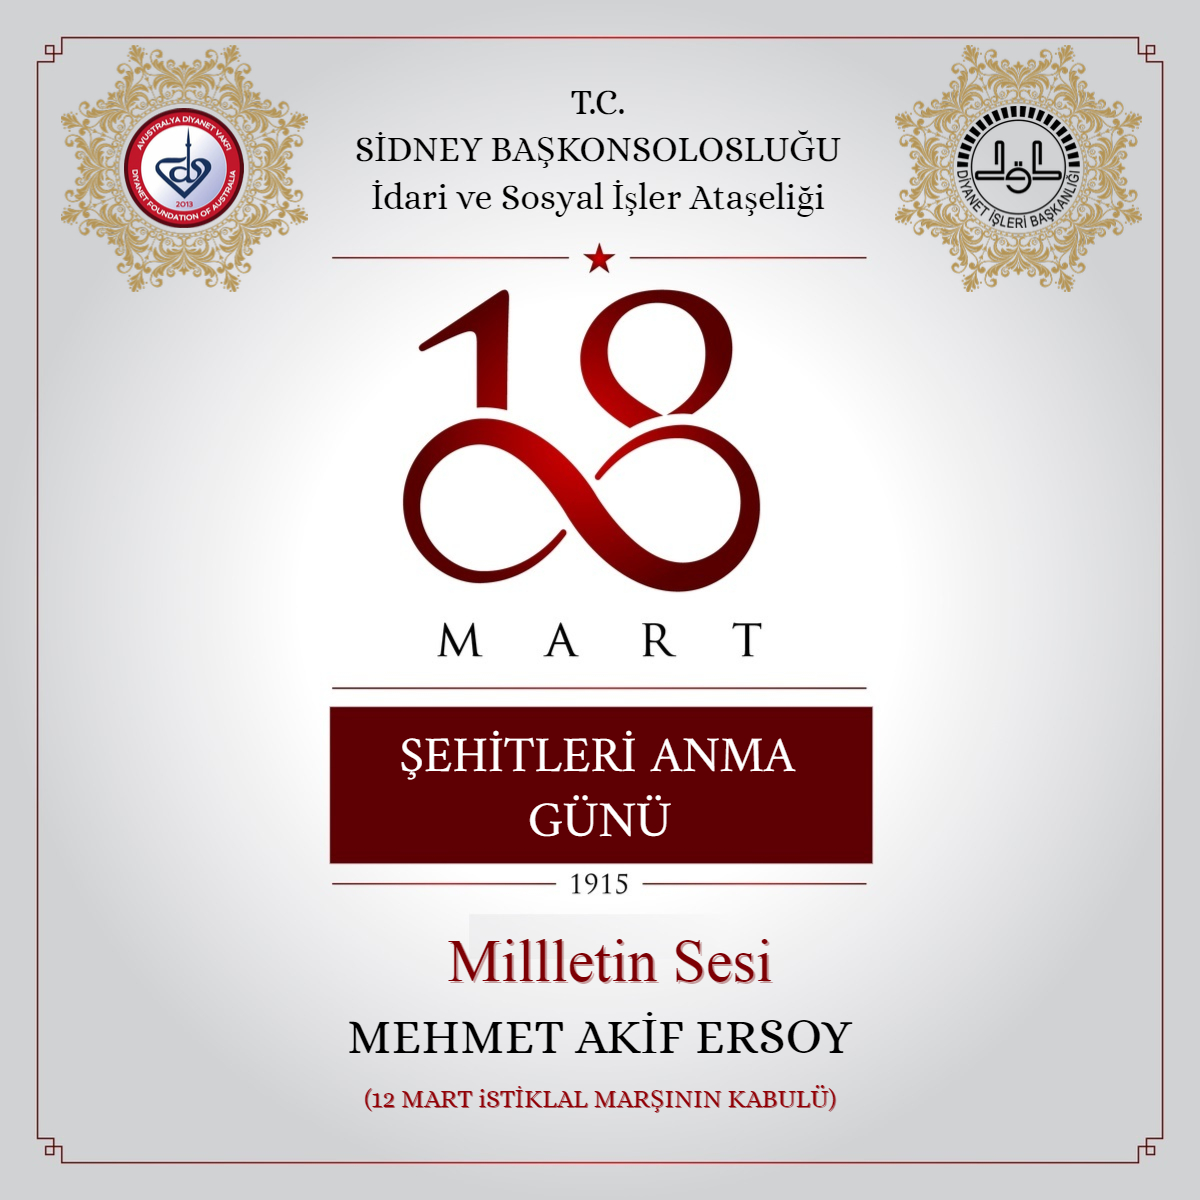 Milletin Sesi Mehmet Akif Ersoy ve Şehitleri Anma Programı Gerçekleştirdik